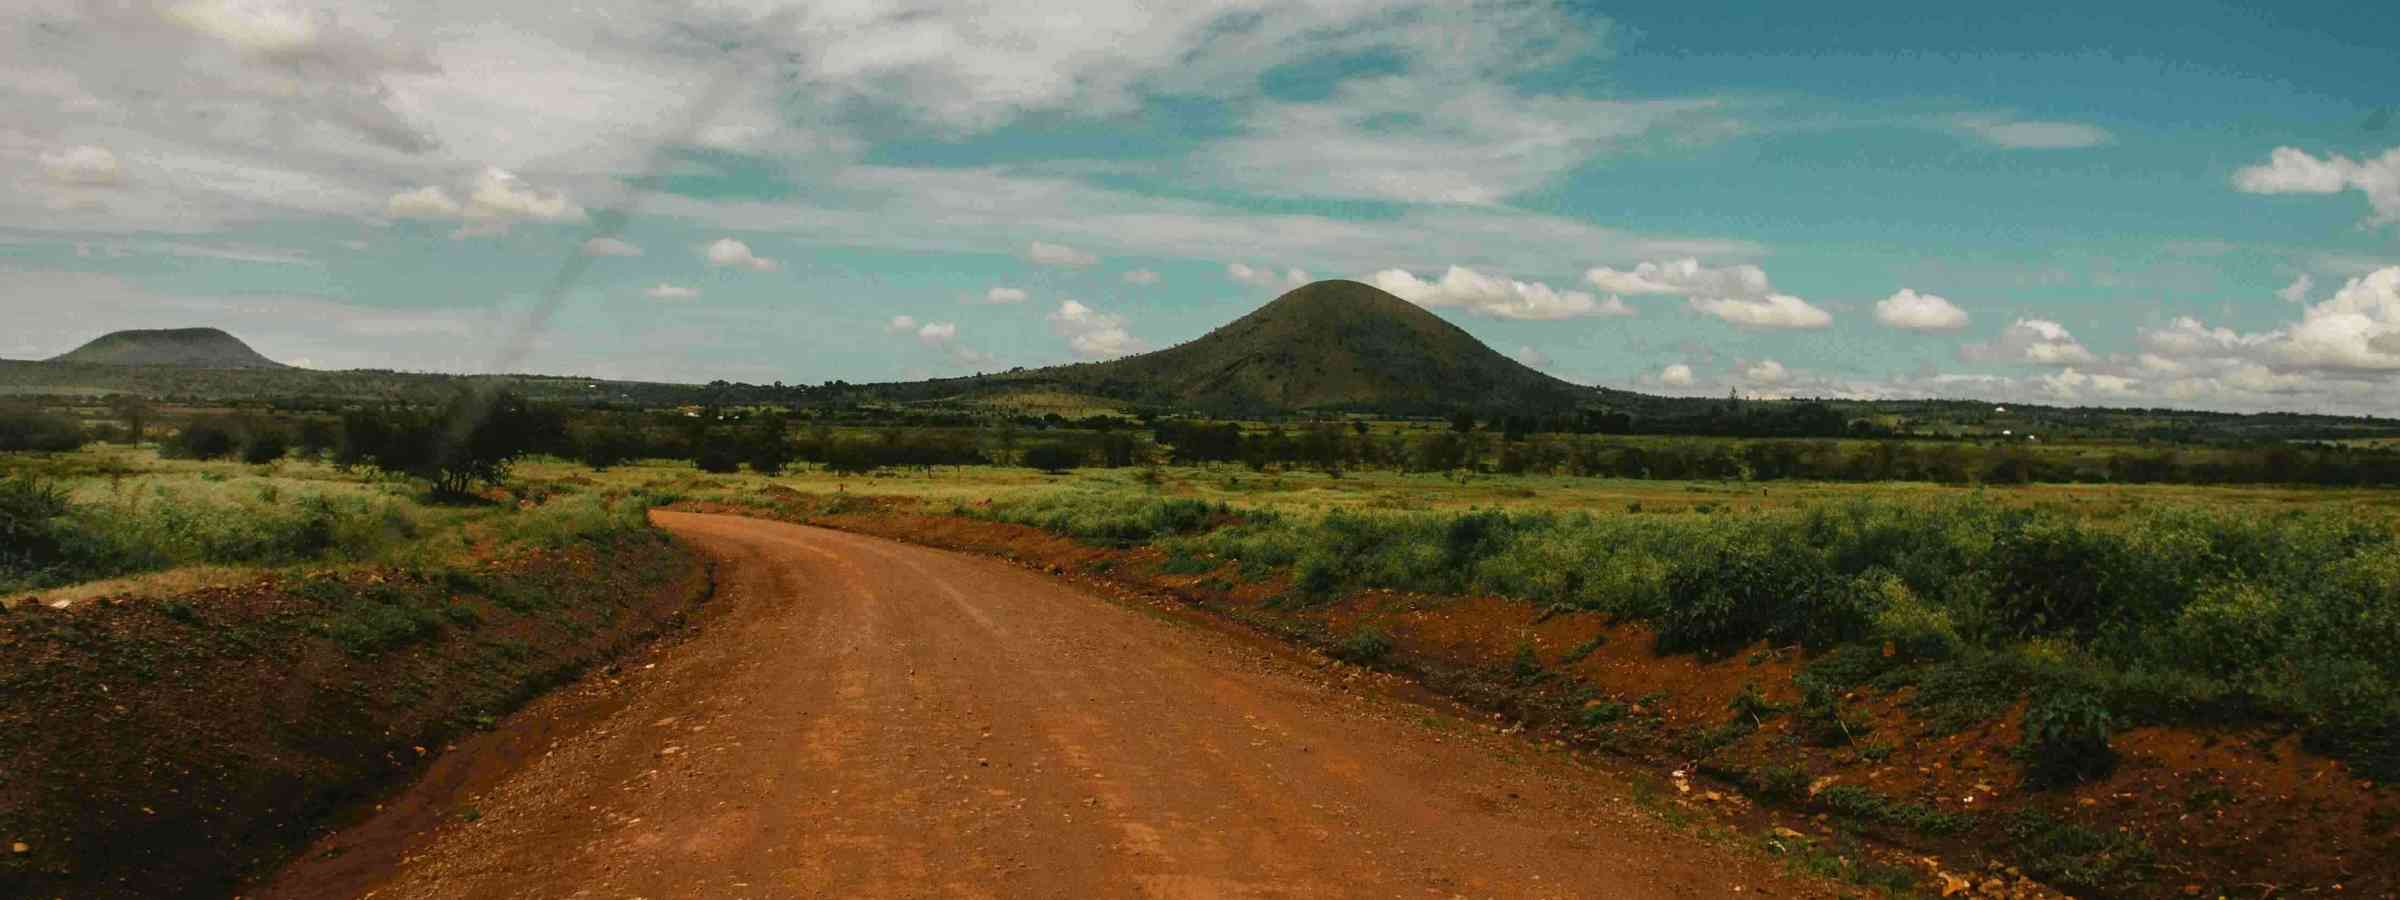 Road in Tanzania